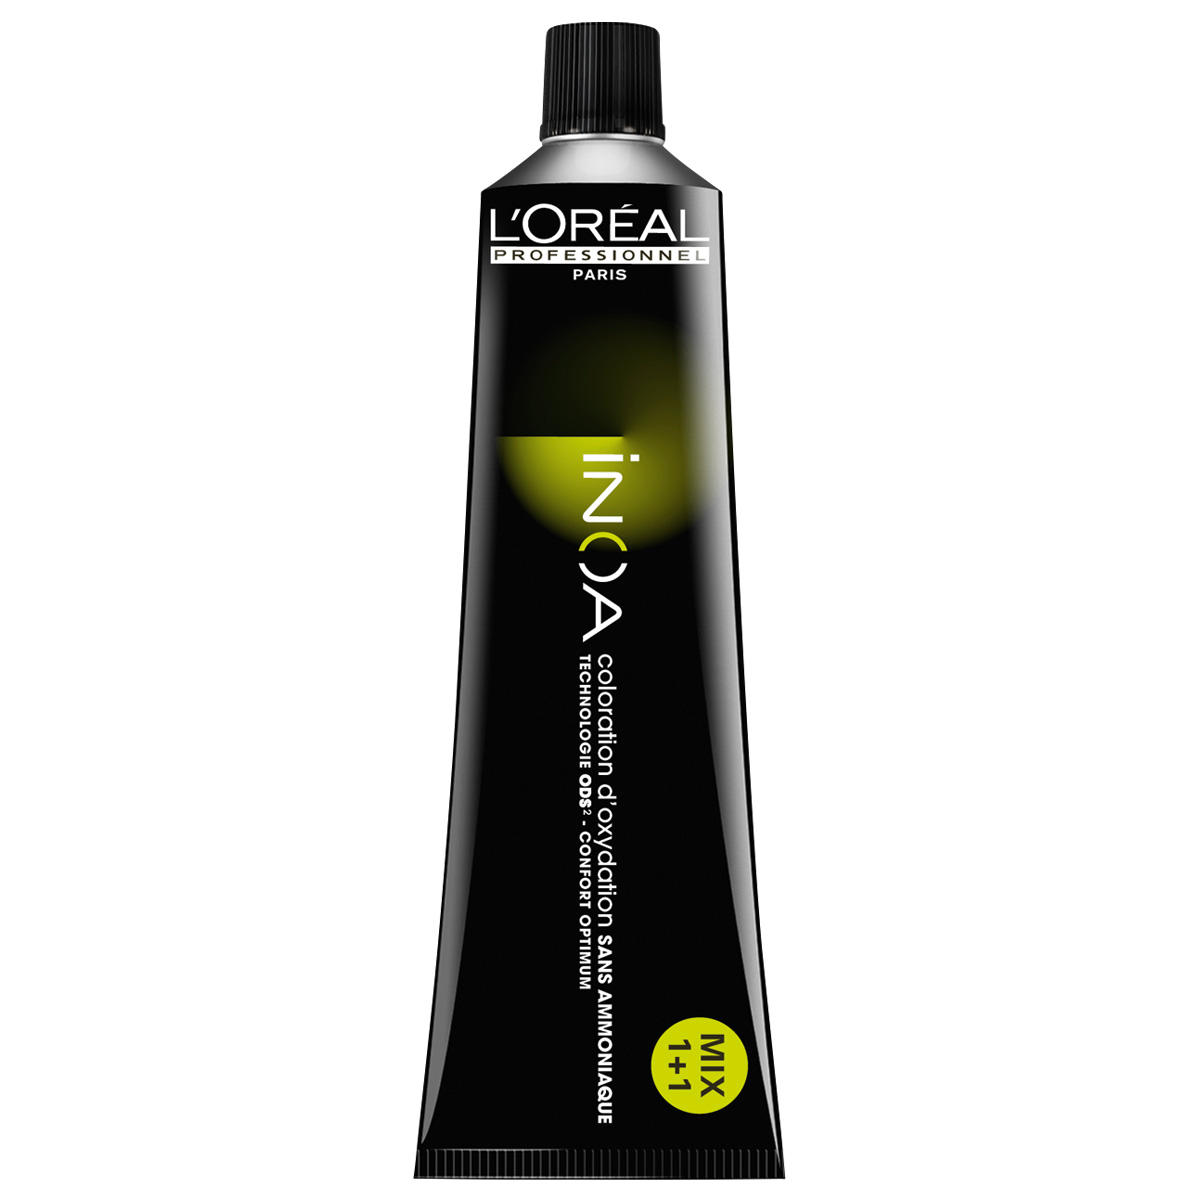 L'Oréal Professionnel Paris Coloration 5,8 brun clair moka, Tube 60 ml